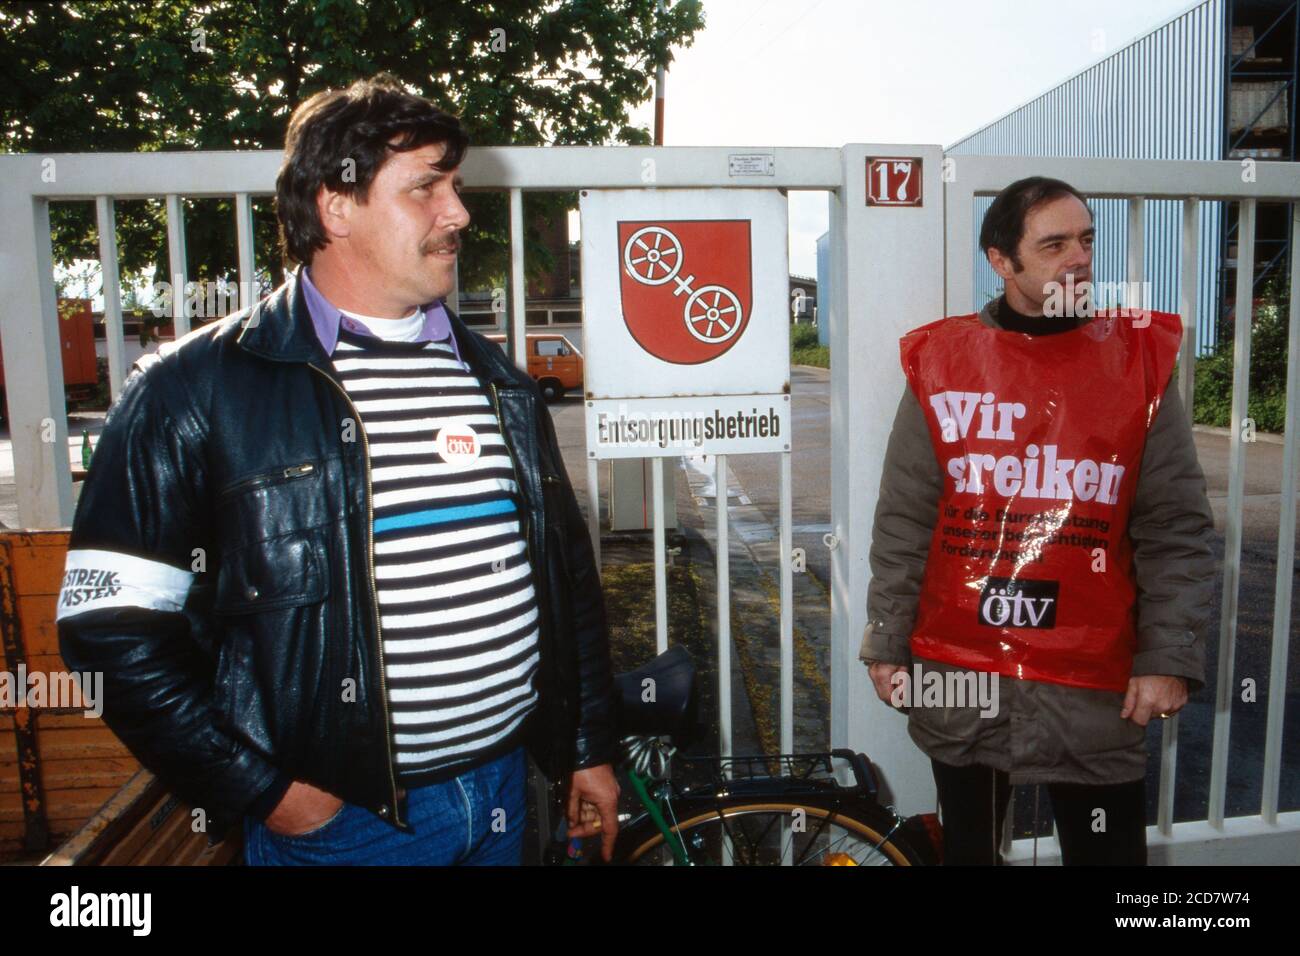 Bildreportage: ÖTV-Streik legt Deutschland lahm, hier verweigern Streikposten den Zugang zu den Entsorgungsbetrieben in Mainz, Deutschland 1992. Stock Photo